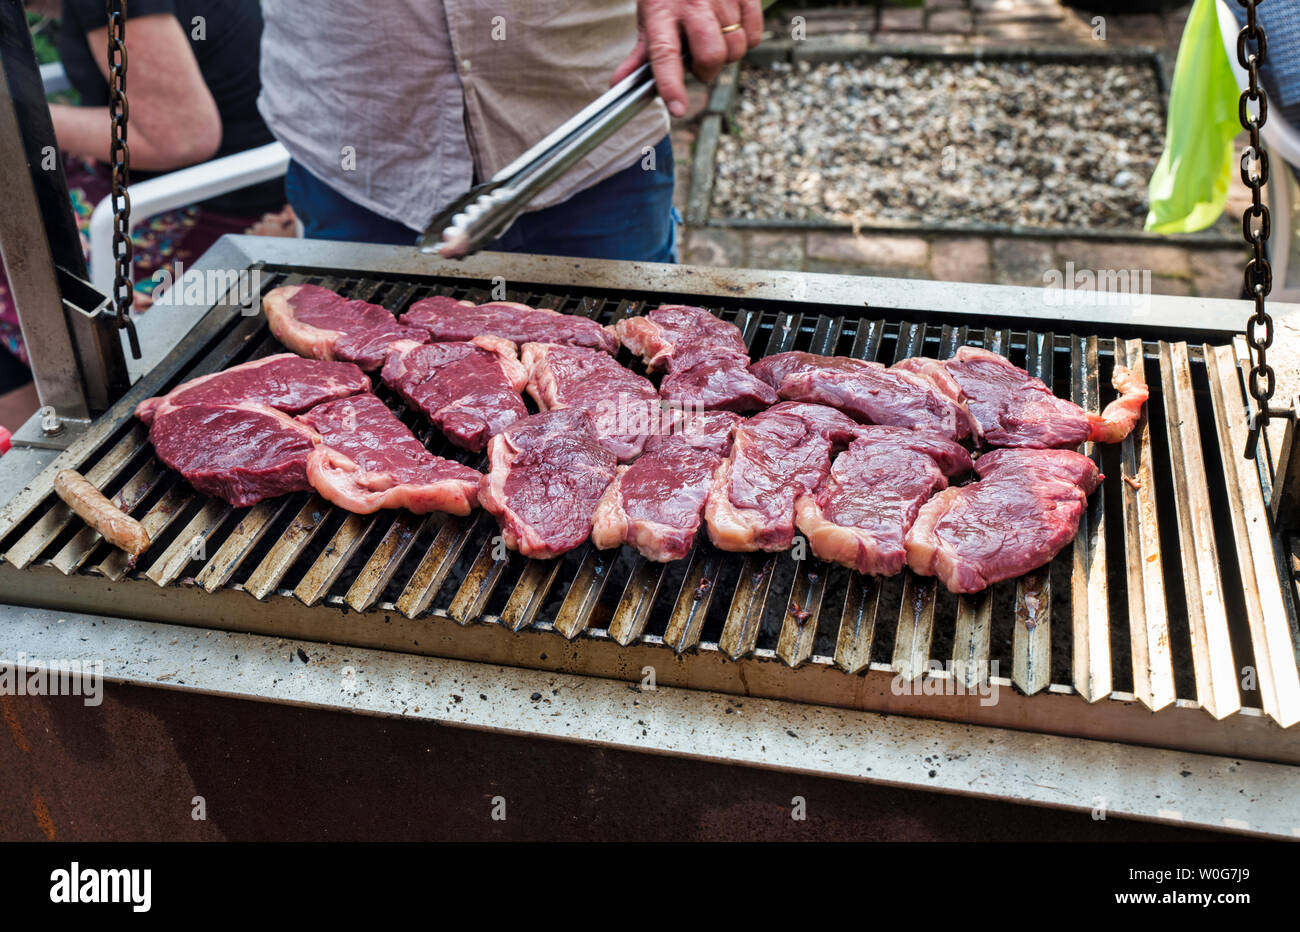 Entrecote Rind Steak auf dem Grill mit Rosmarin Salz und Pfeffer  Stockfotografie - Alamy